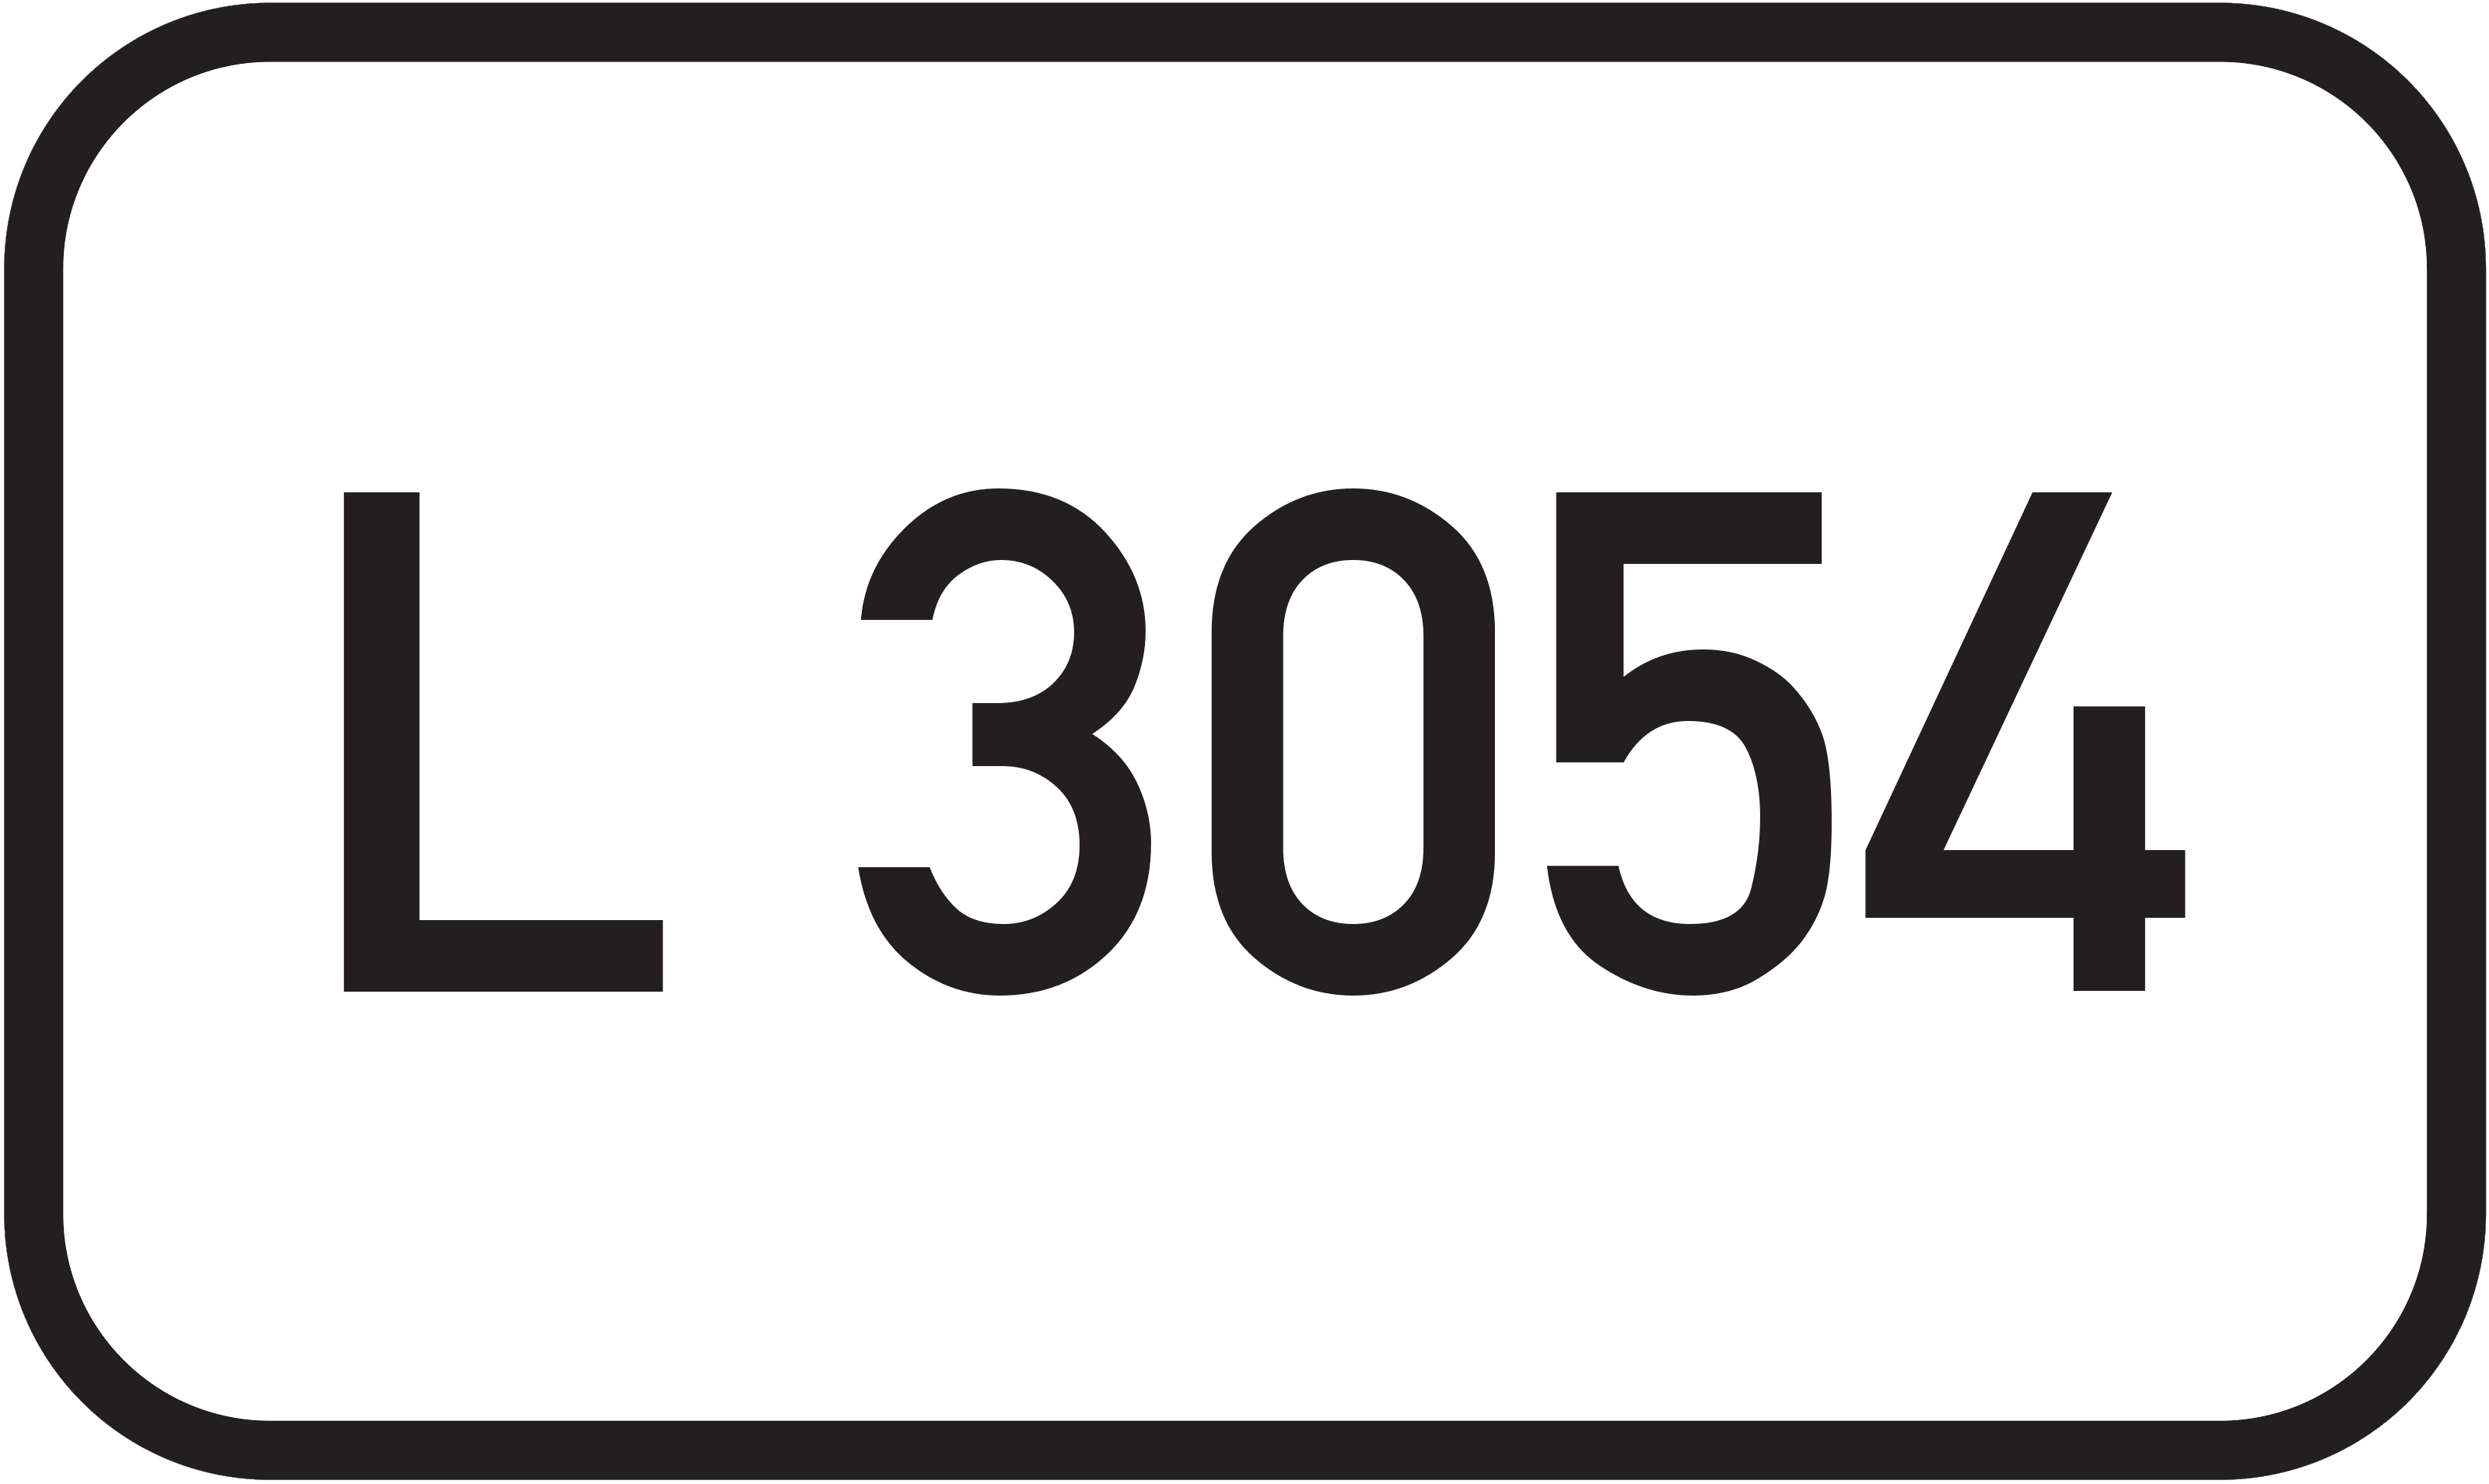 Landesstraße L 3054